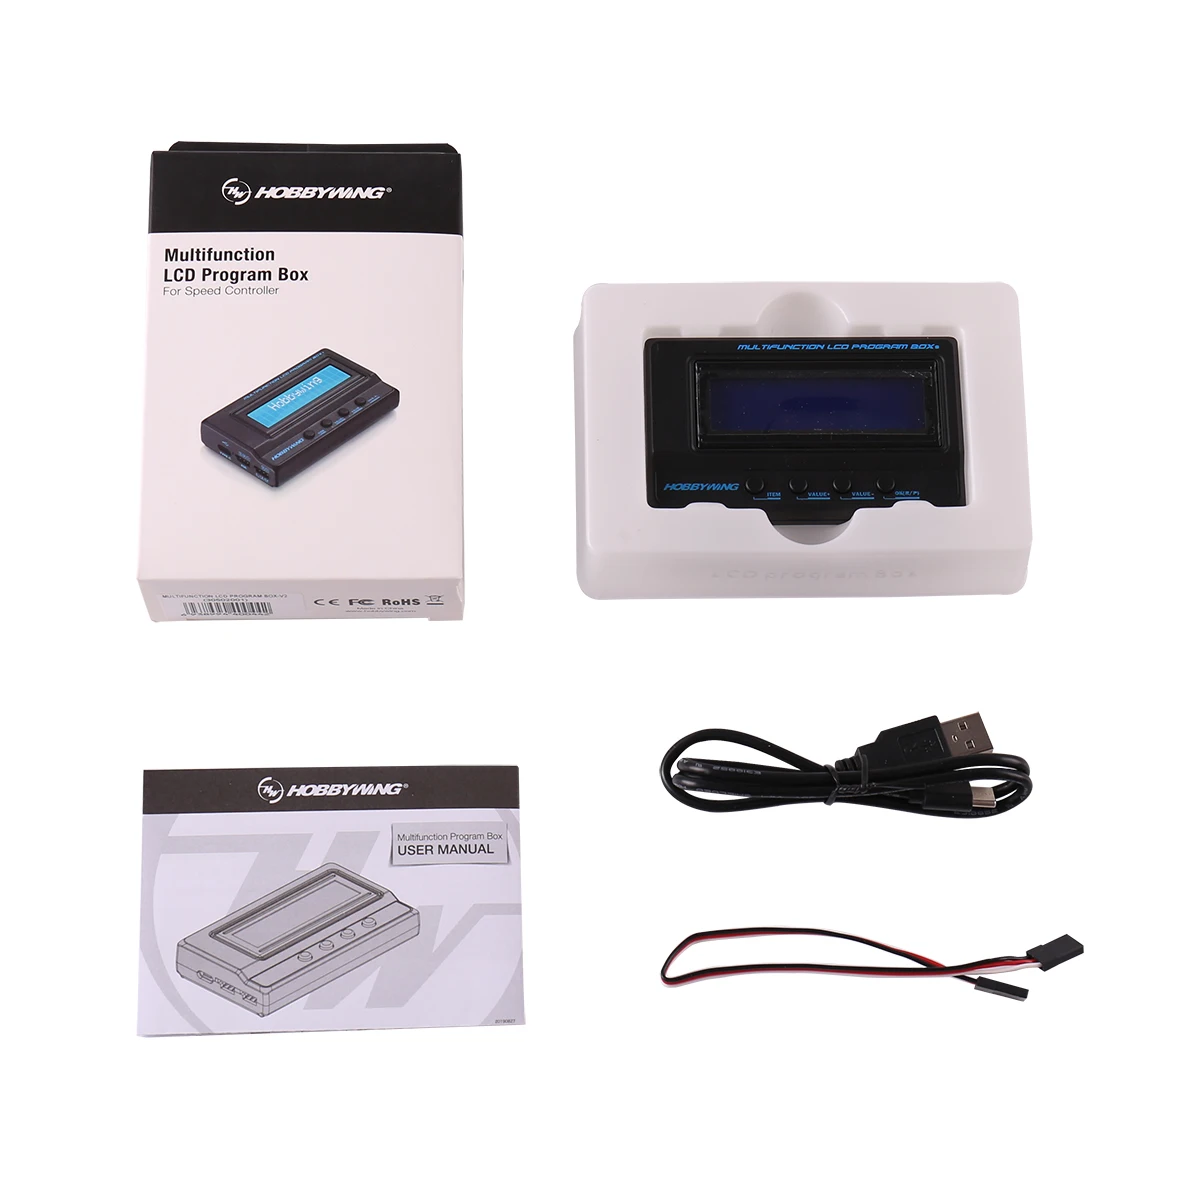 

HOBBYWING 3in1 3 IN 1 3in 1 V2 V3 V4 Multifunction LCD Program Box program card (Integrated w/ USB adaptor Lipo Voltmeter